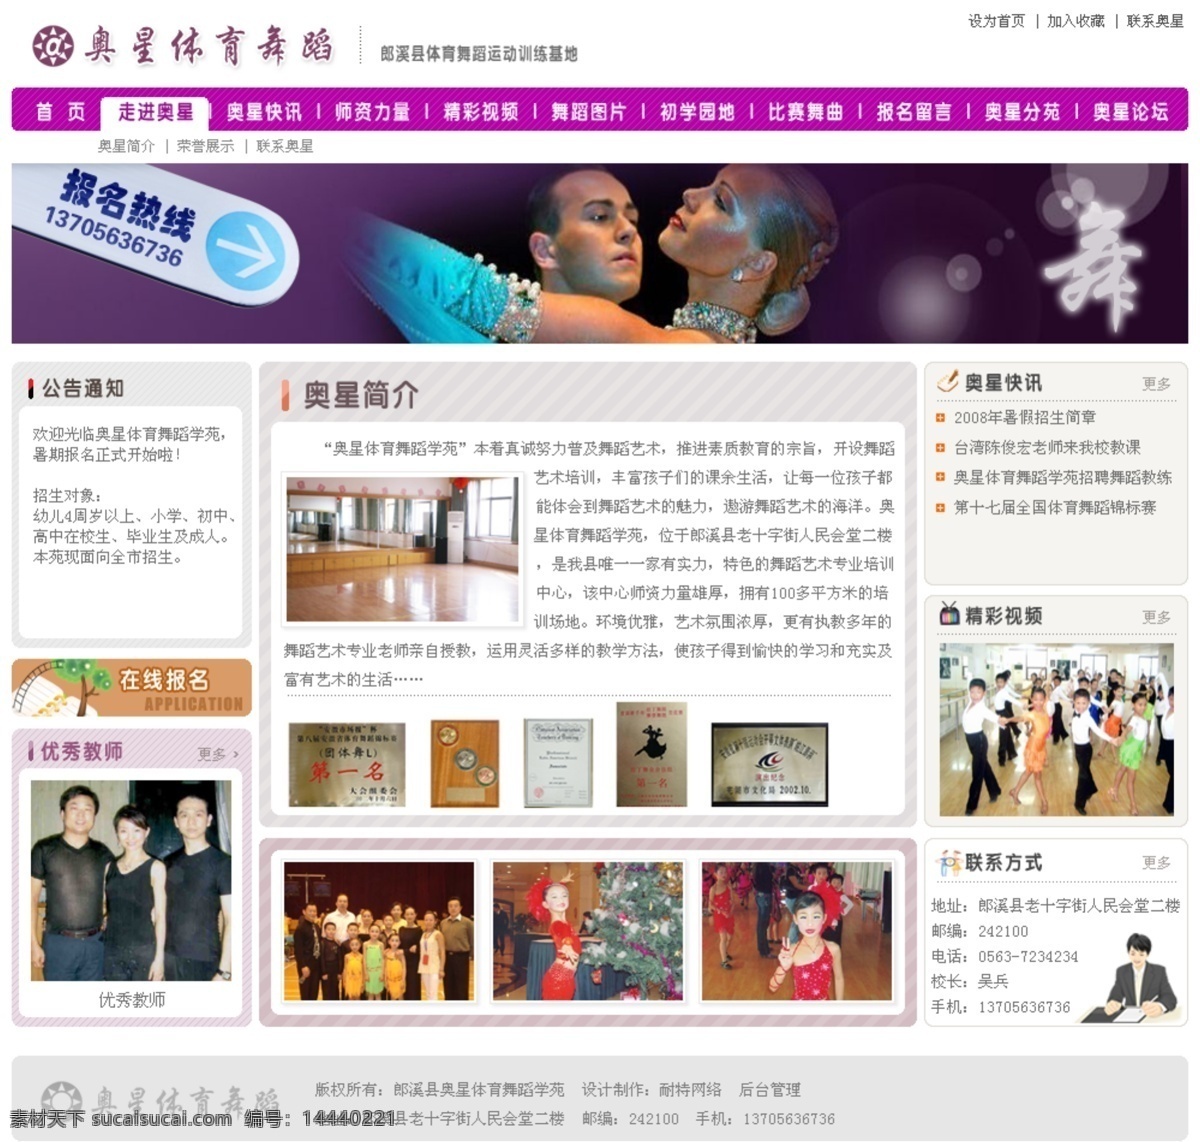 体育 舞蹈 培训中心 网页模板 中国风格 网页素材